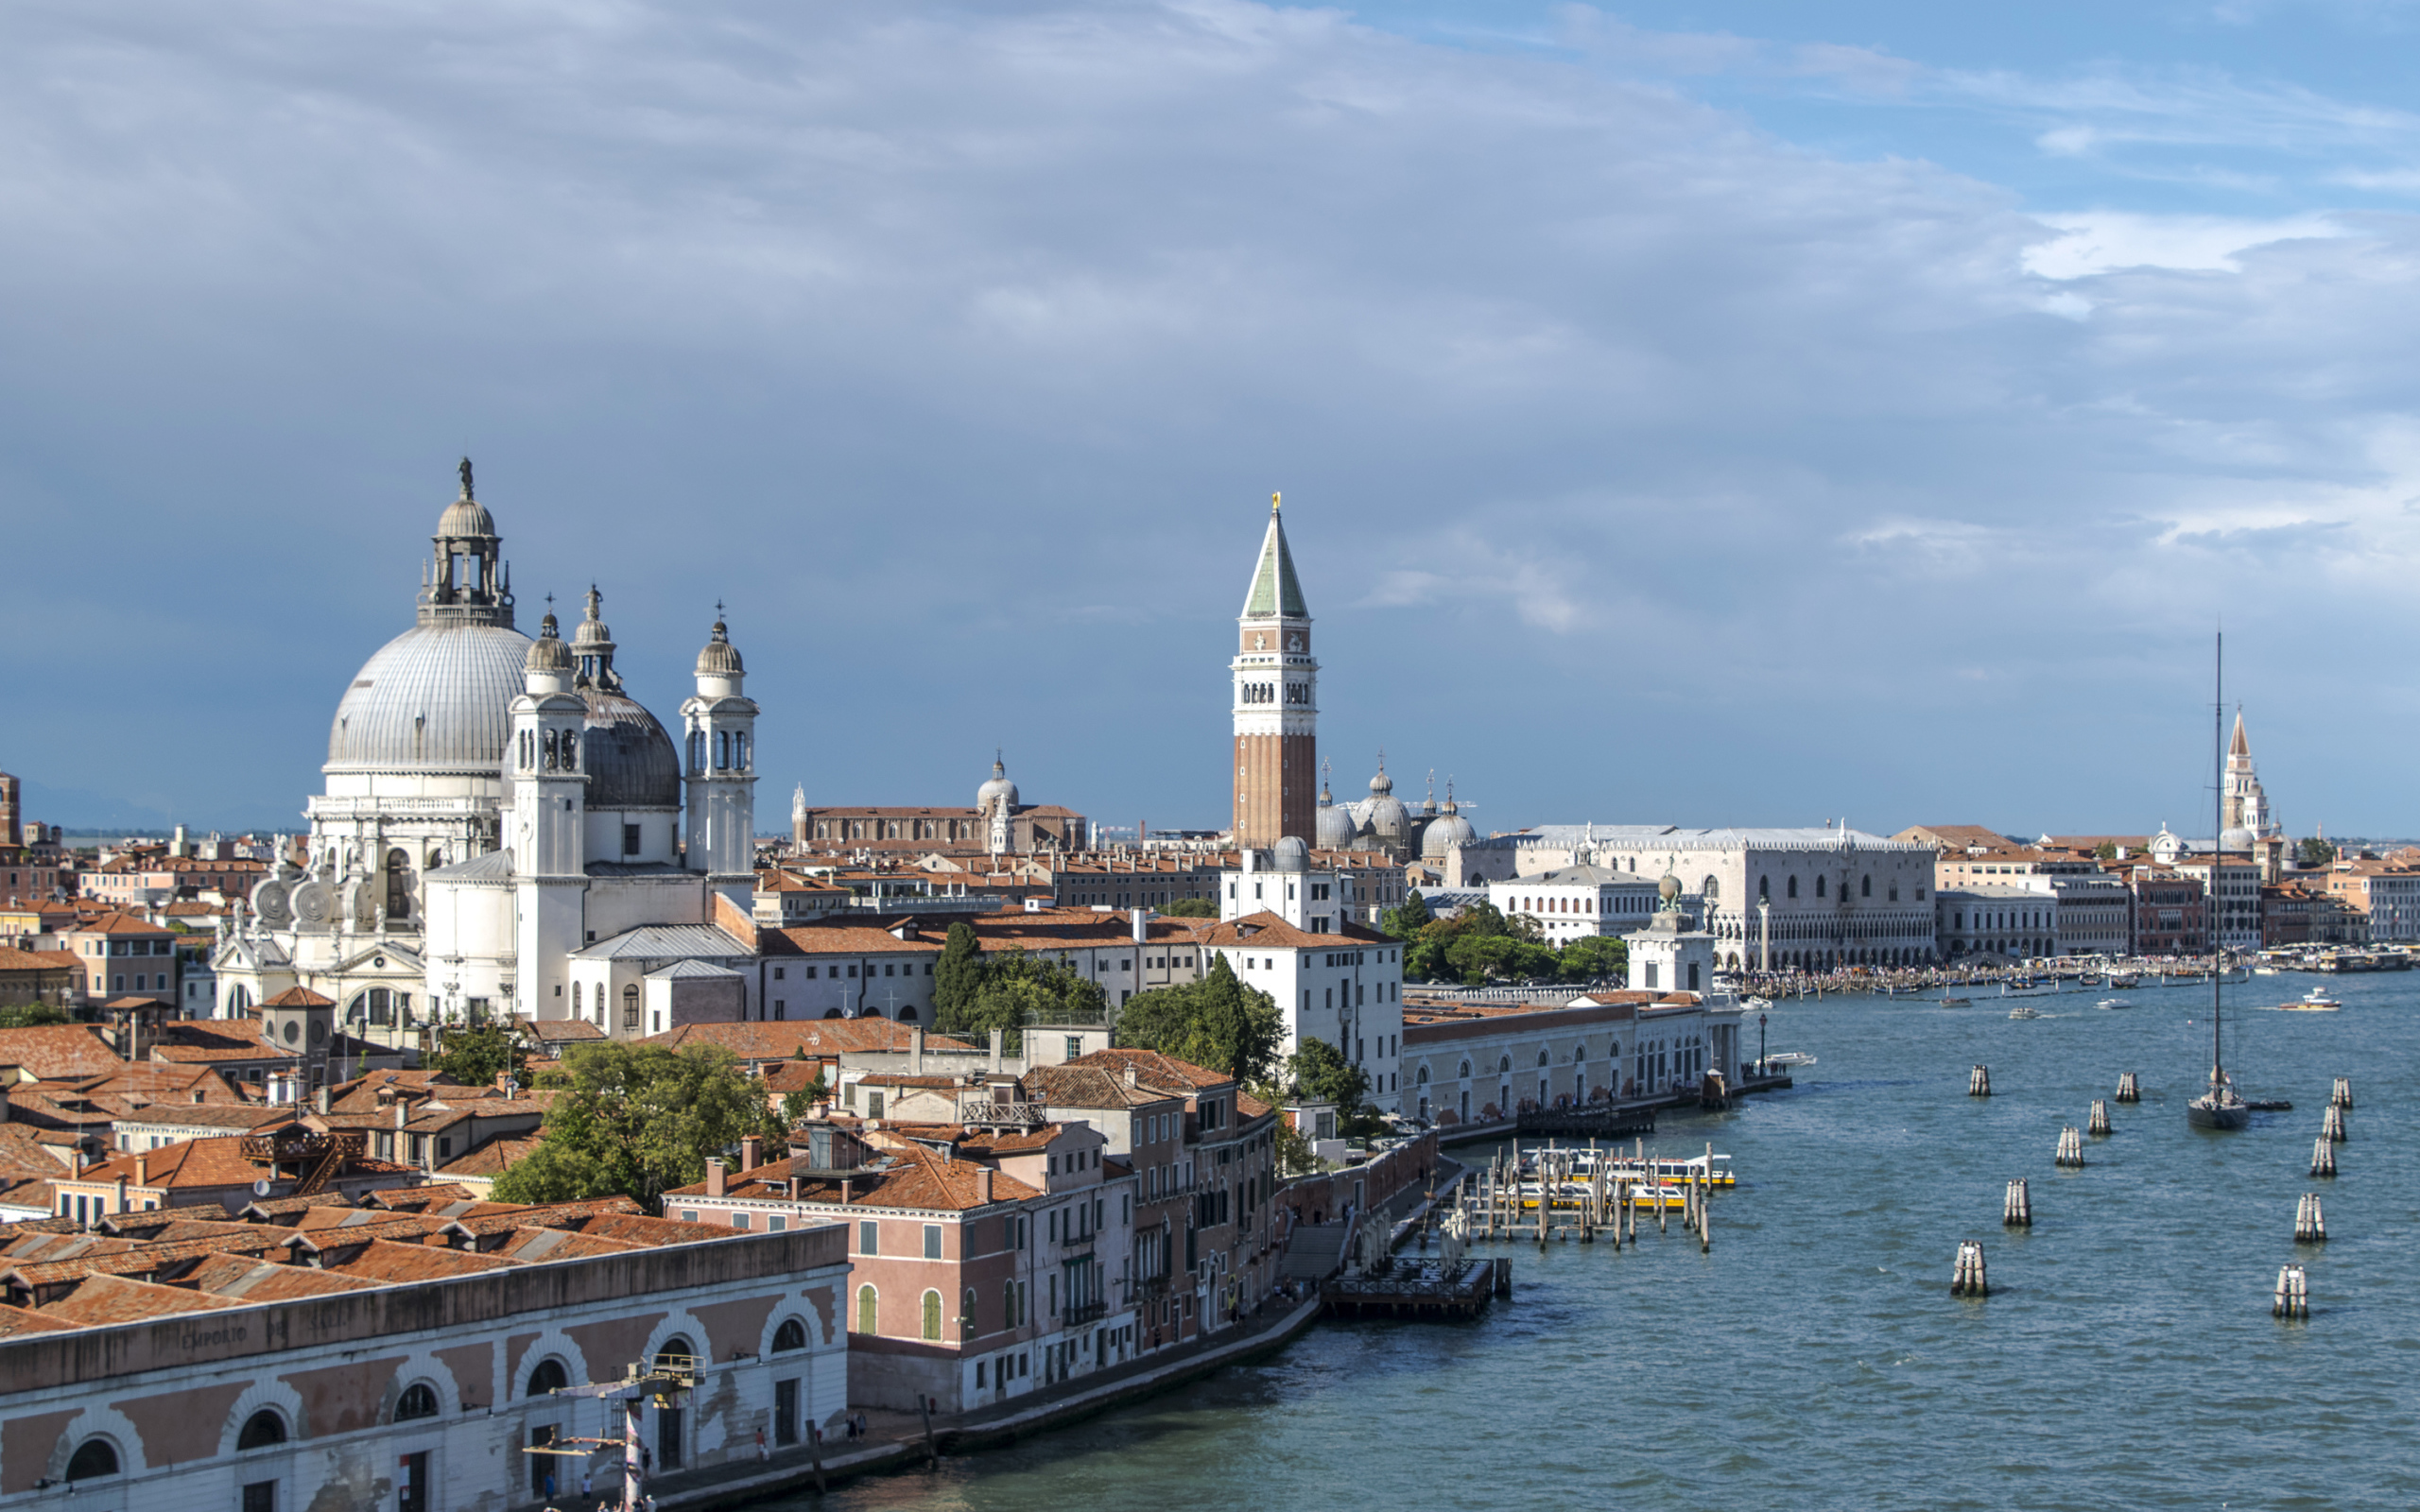 Архитектура у причала в заливе, Венеция. Италия 